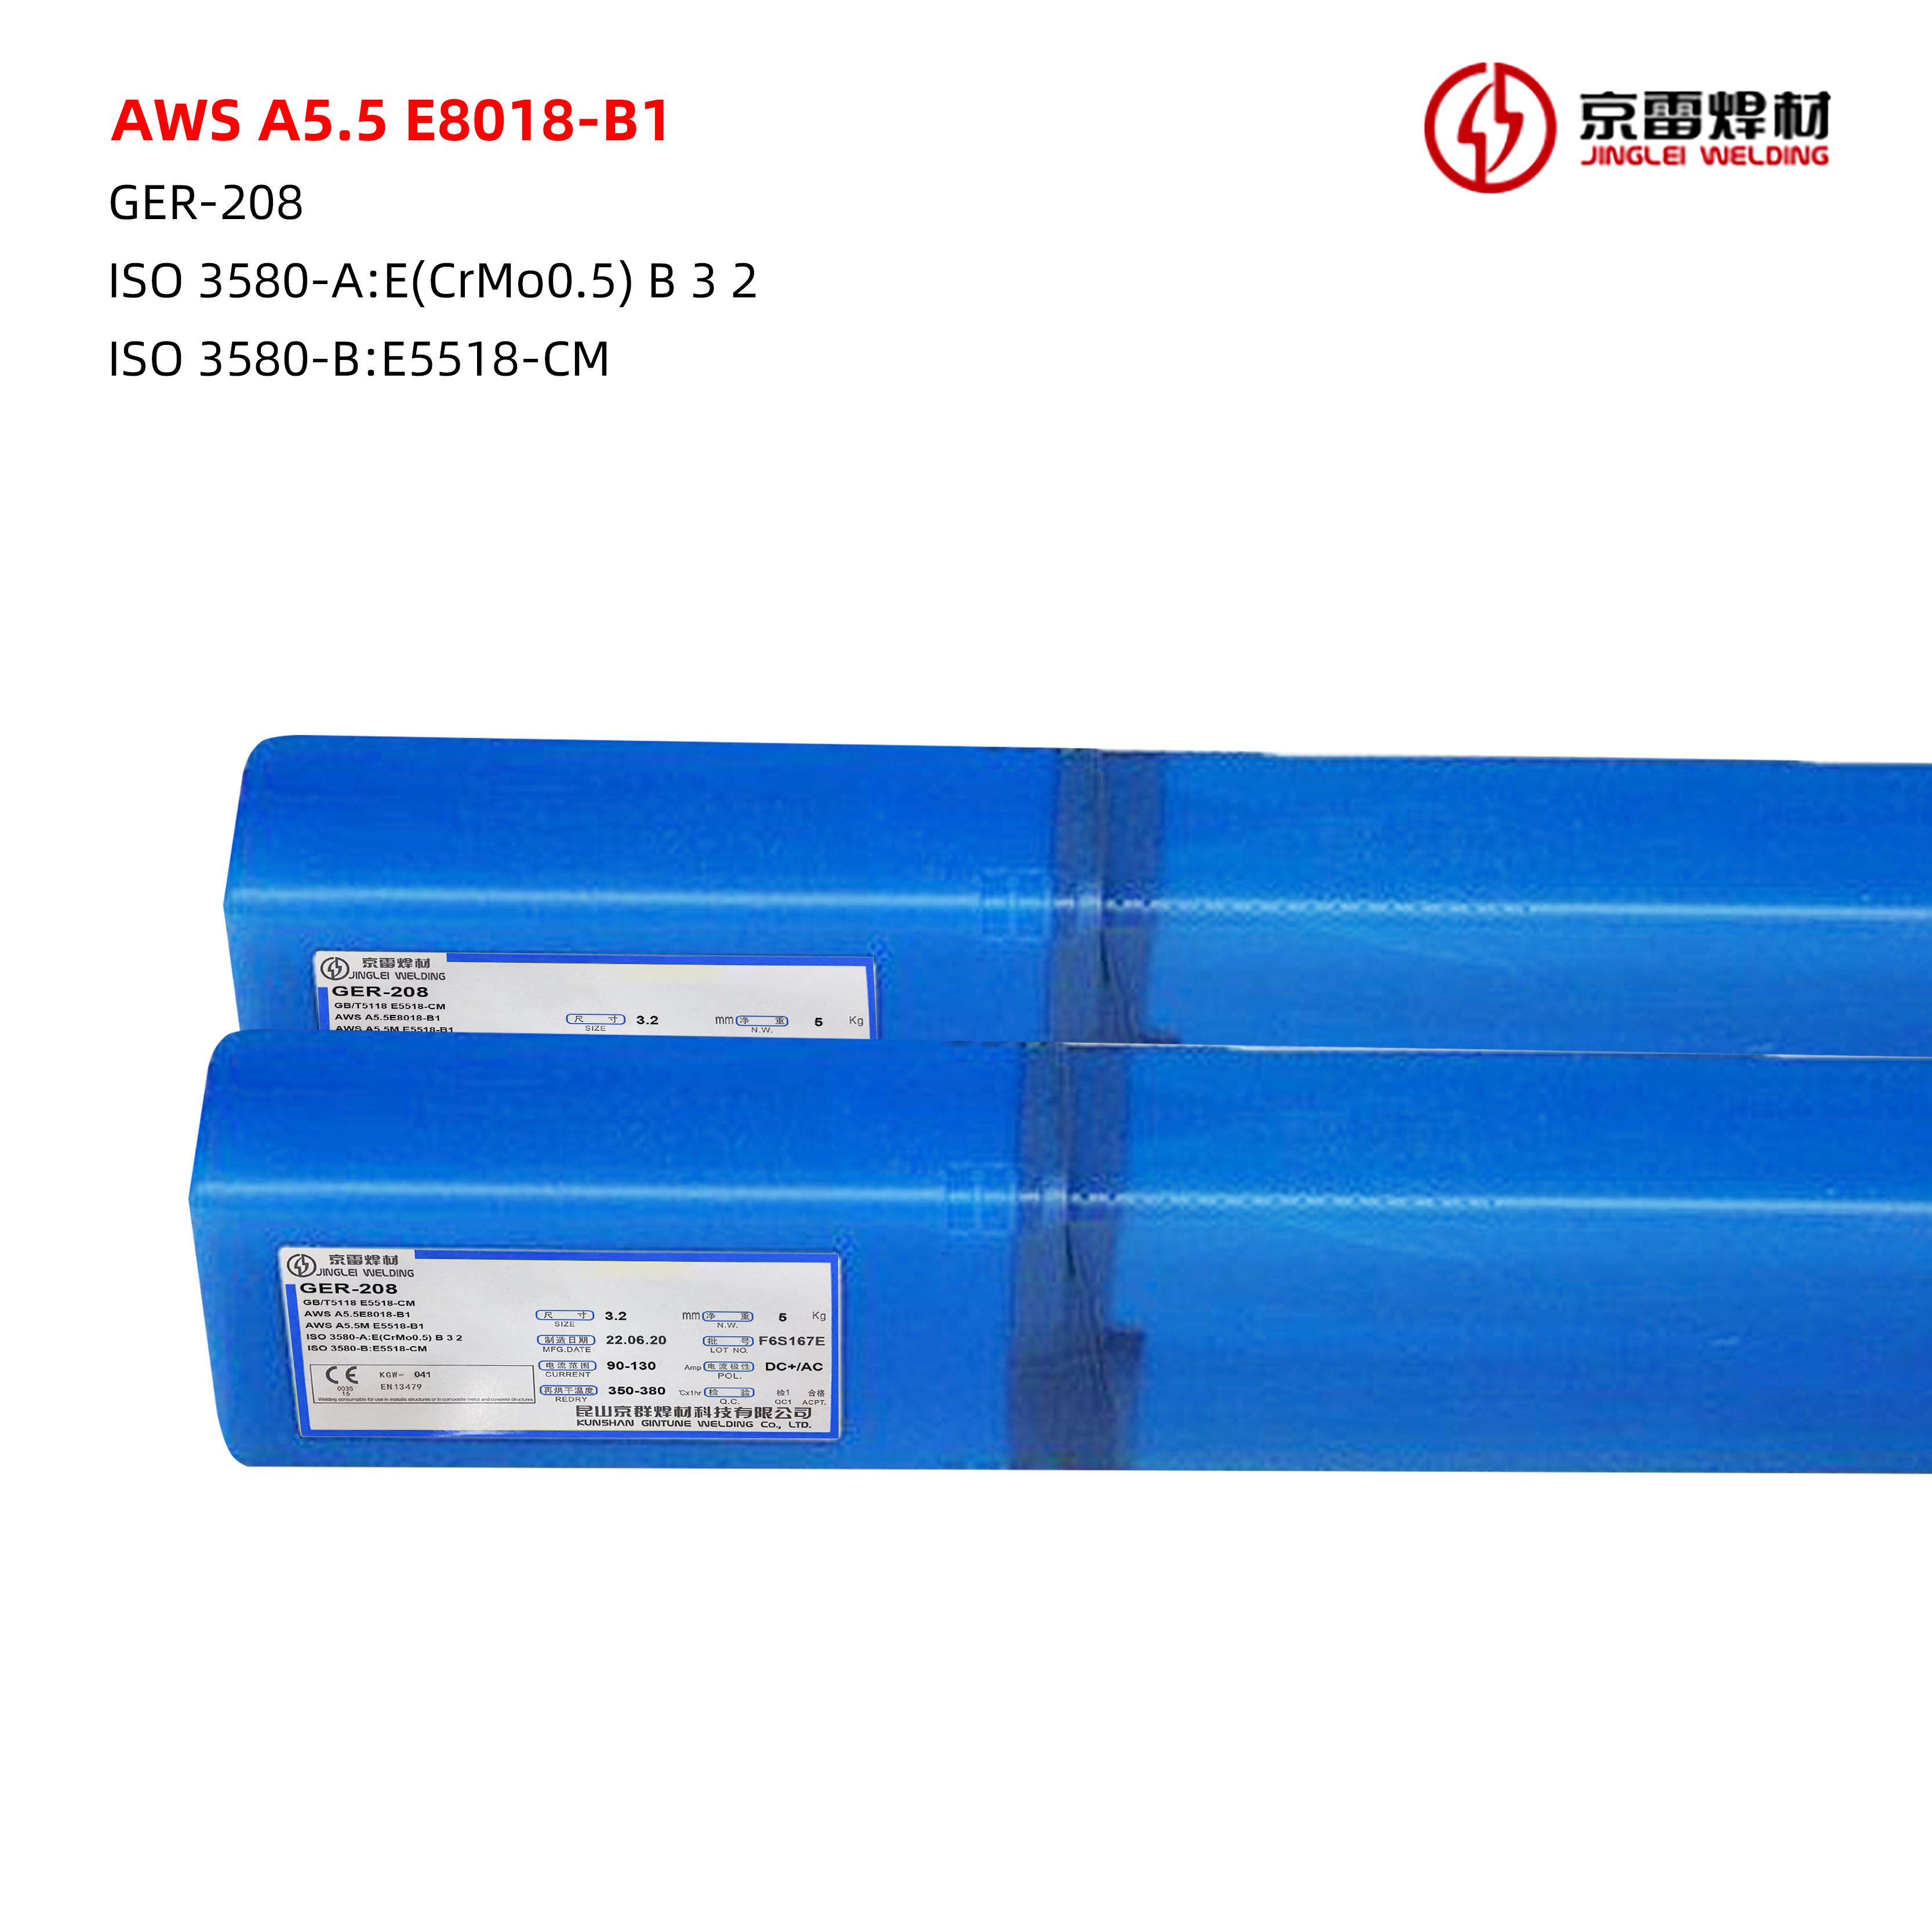 AWS A5.5 E8018-B1 01